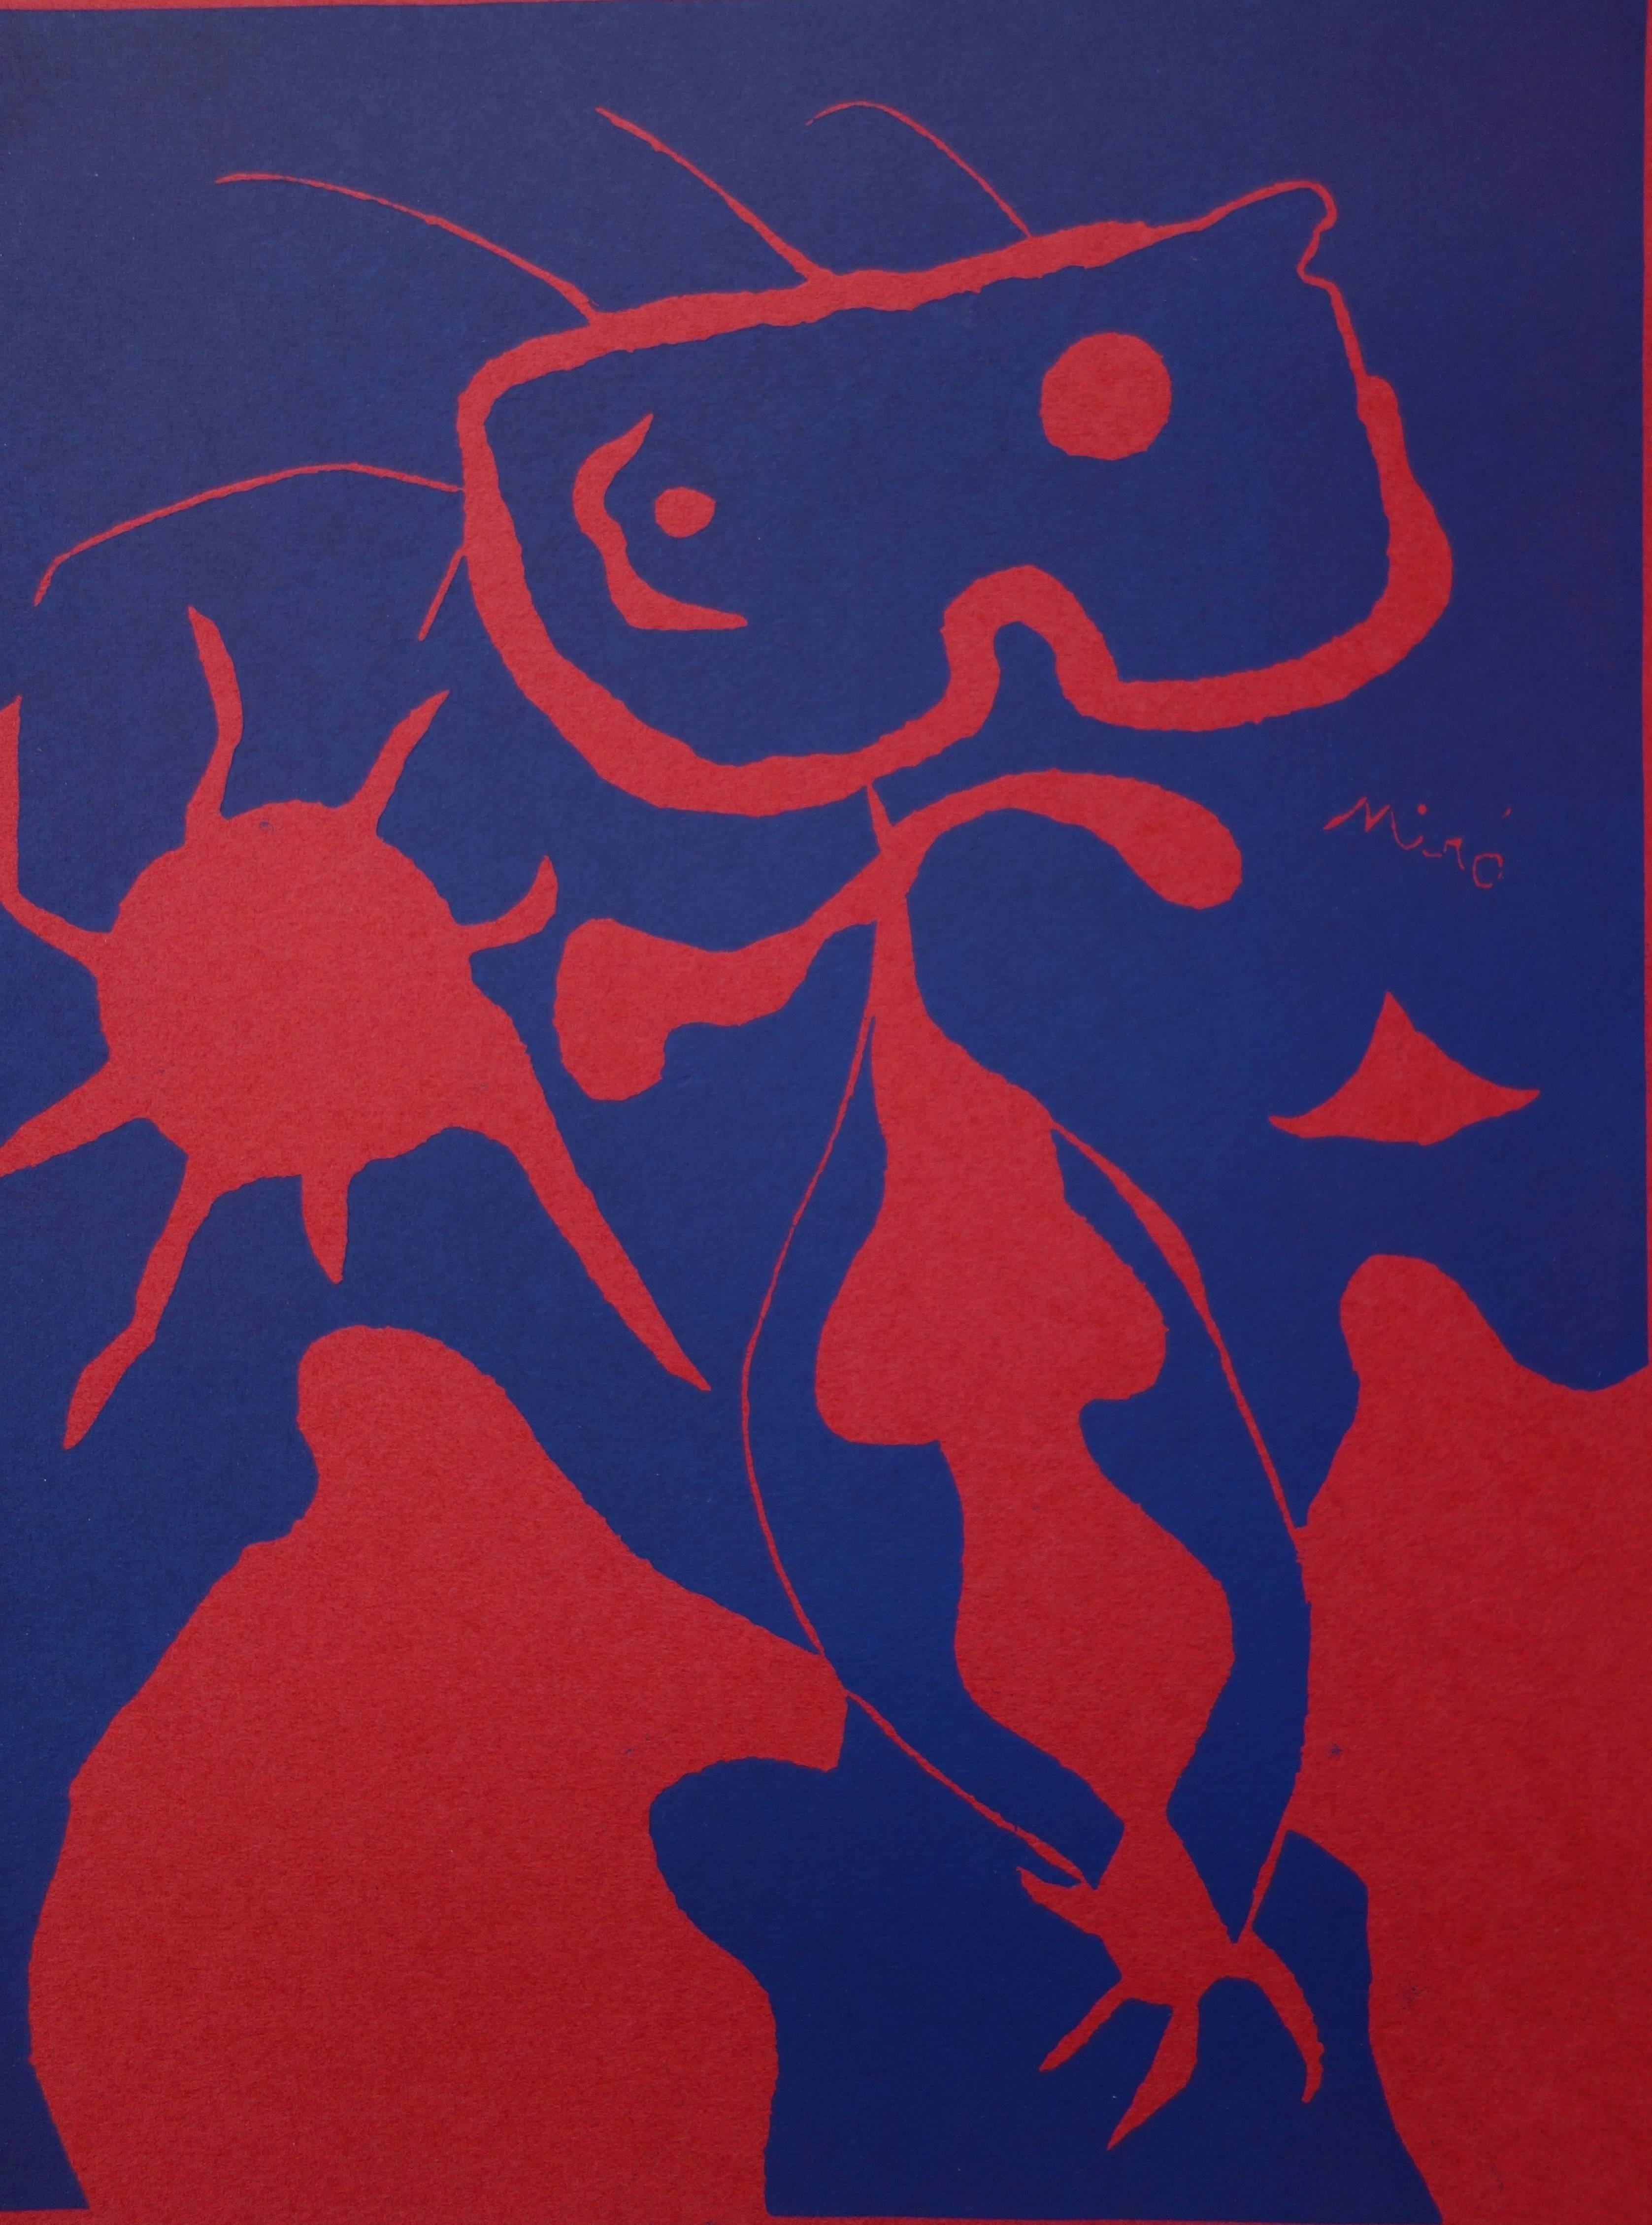 Junge mit roter Sonne - Original-Linolschnitt - 1938 (Surrealismus), Print, von Joan Miró